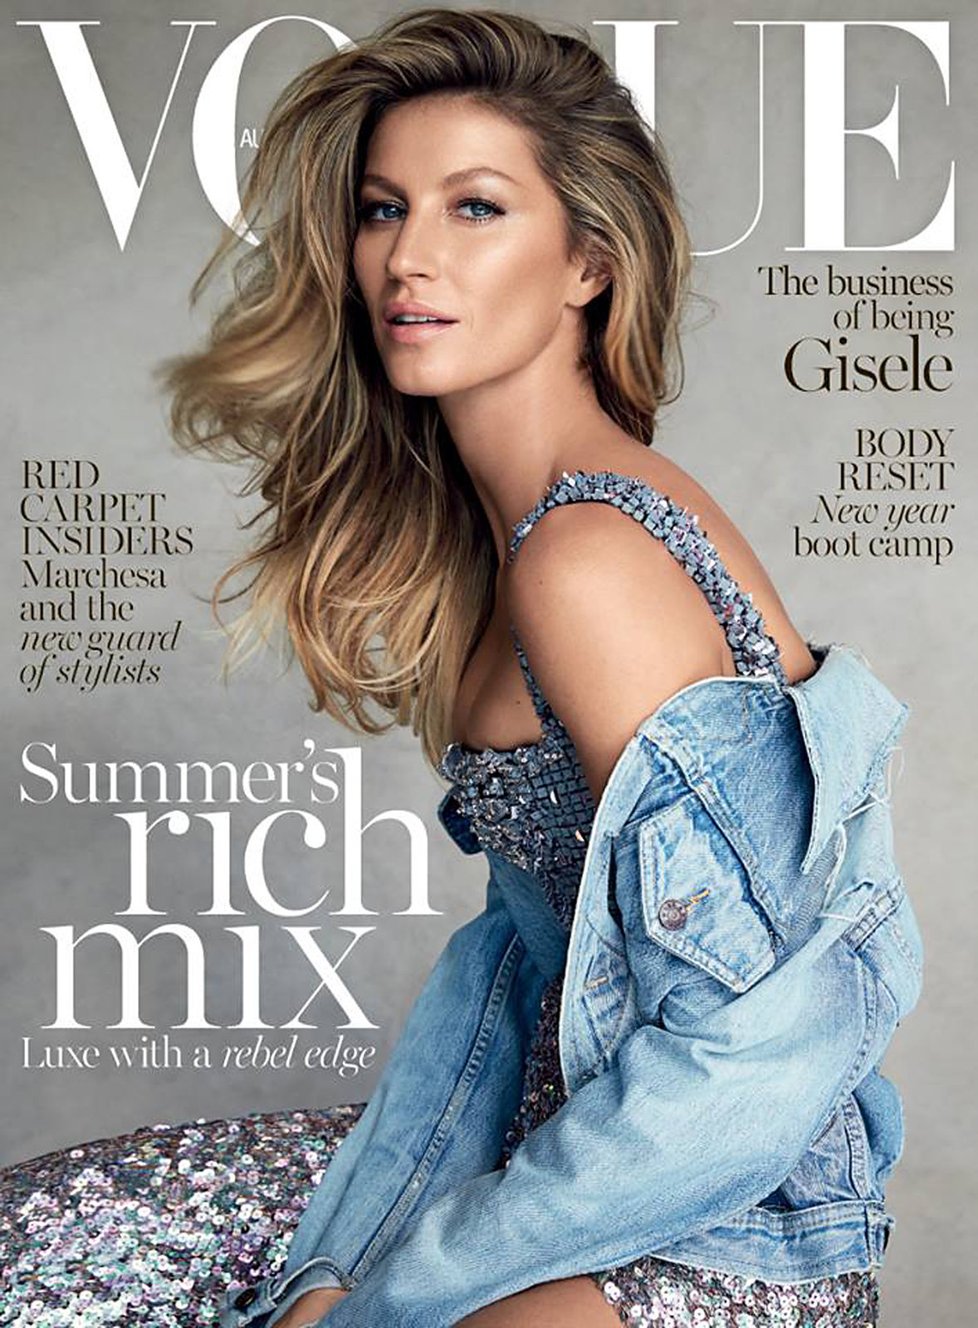 Gisele Bündchen se objevila na titulce prestižního magazínu Vogue celkem 39krát.